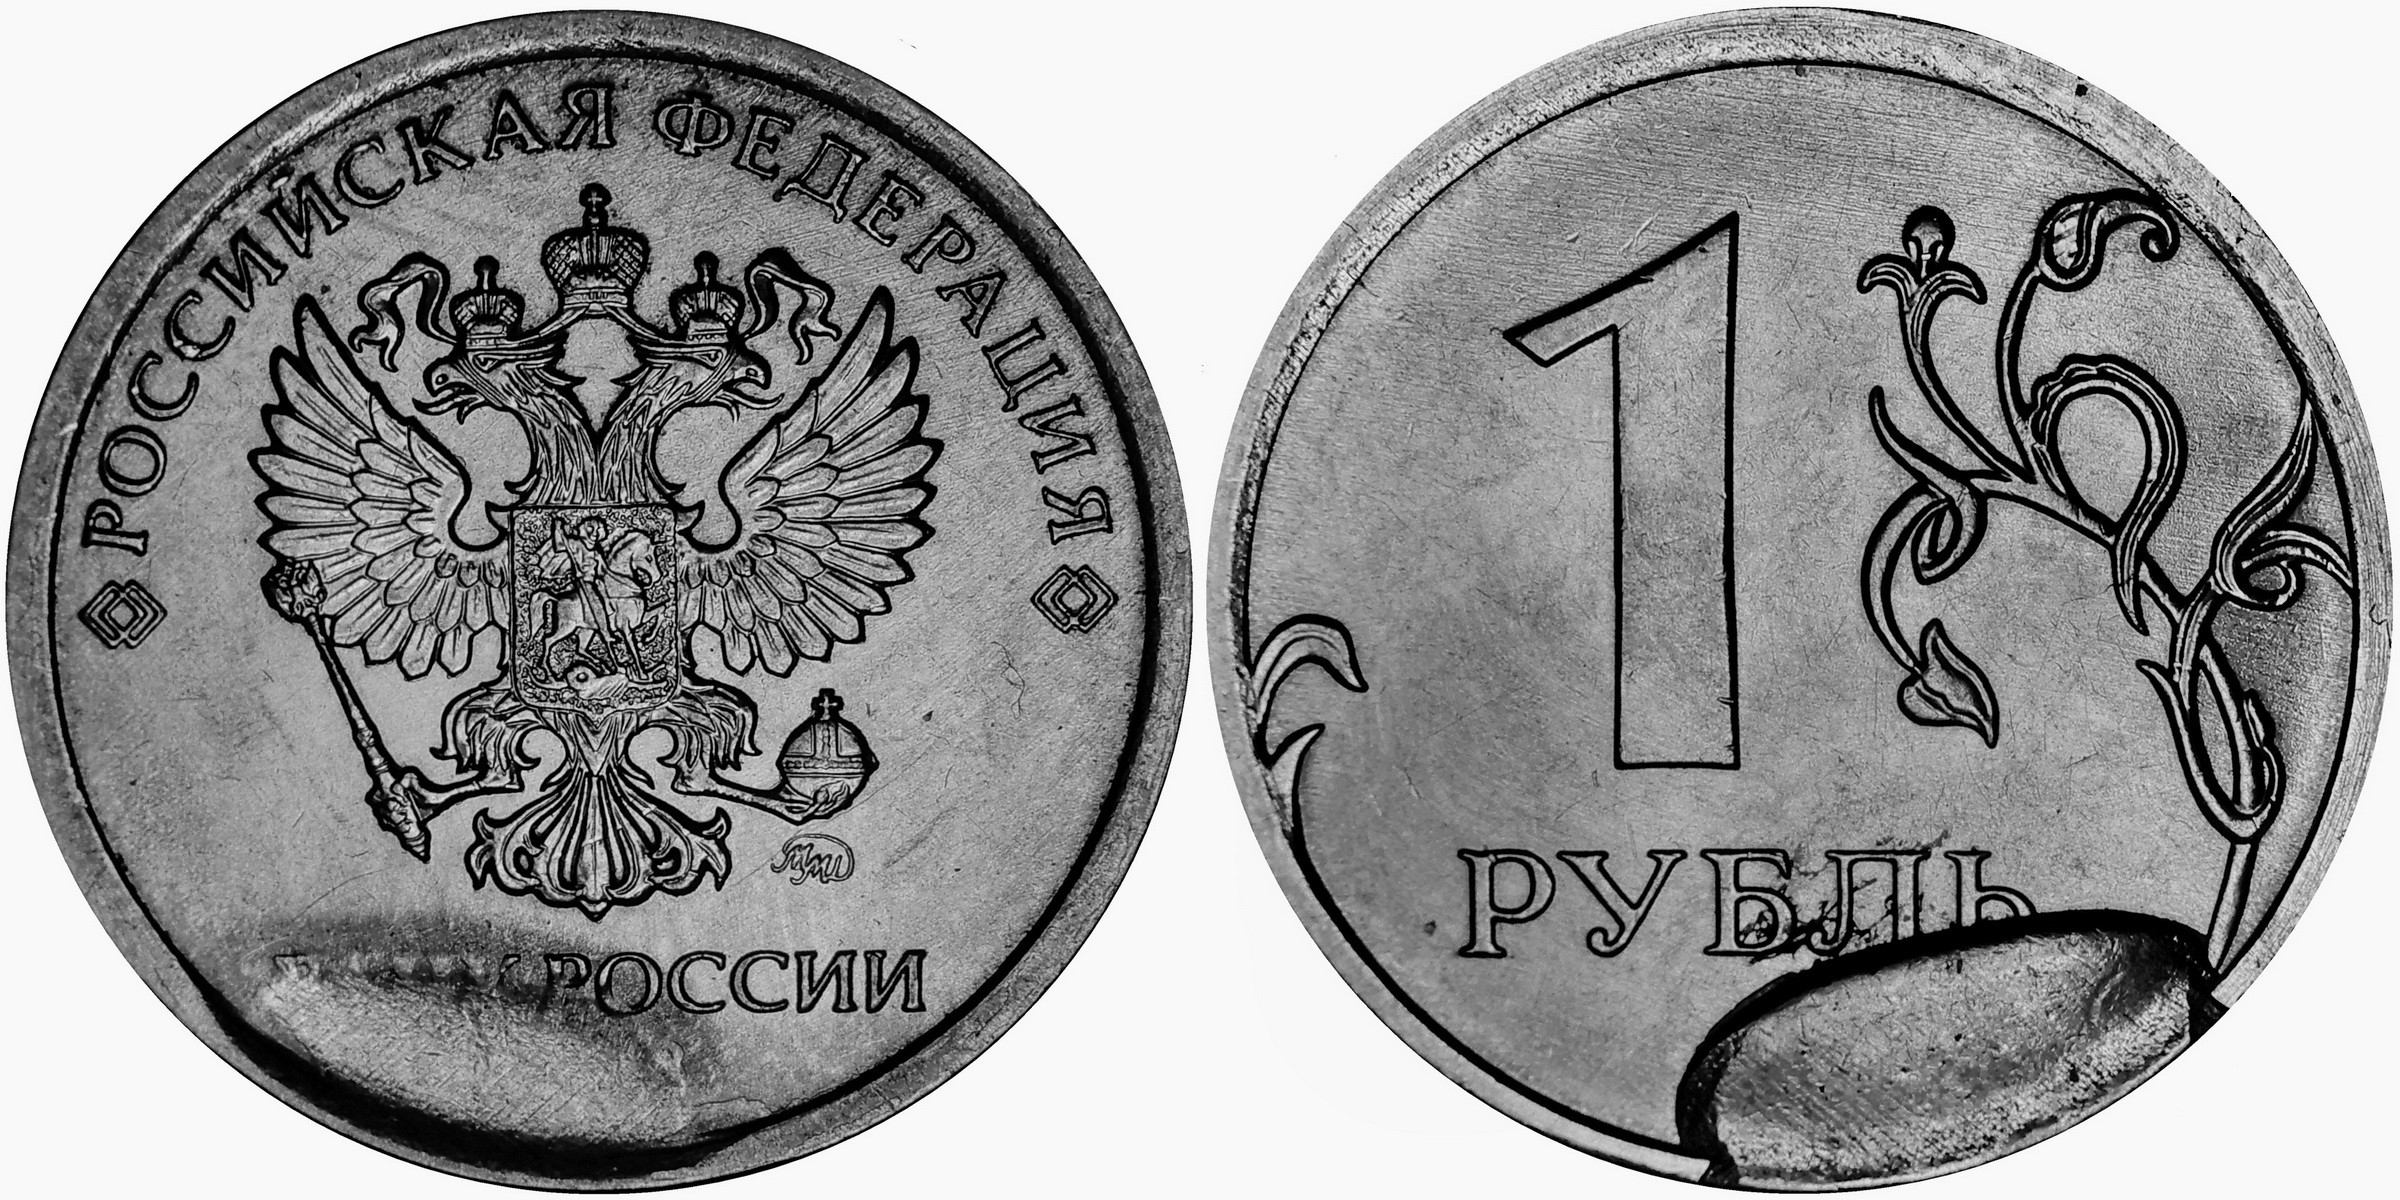 Ба рубль. Монета 1 рубль реверс и Аверс. 1 Рубль 2020 брак раскол штемпеля. 1 Рубль 2020 года брак раскол. Монета брак 1 рубль 2020 раскол штемпеля.